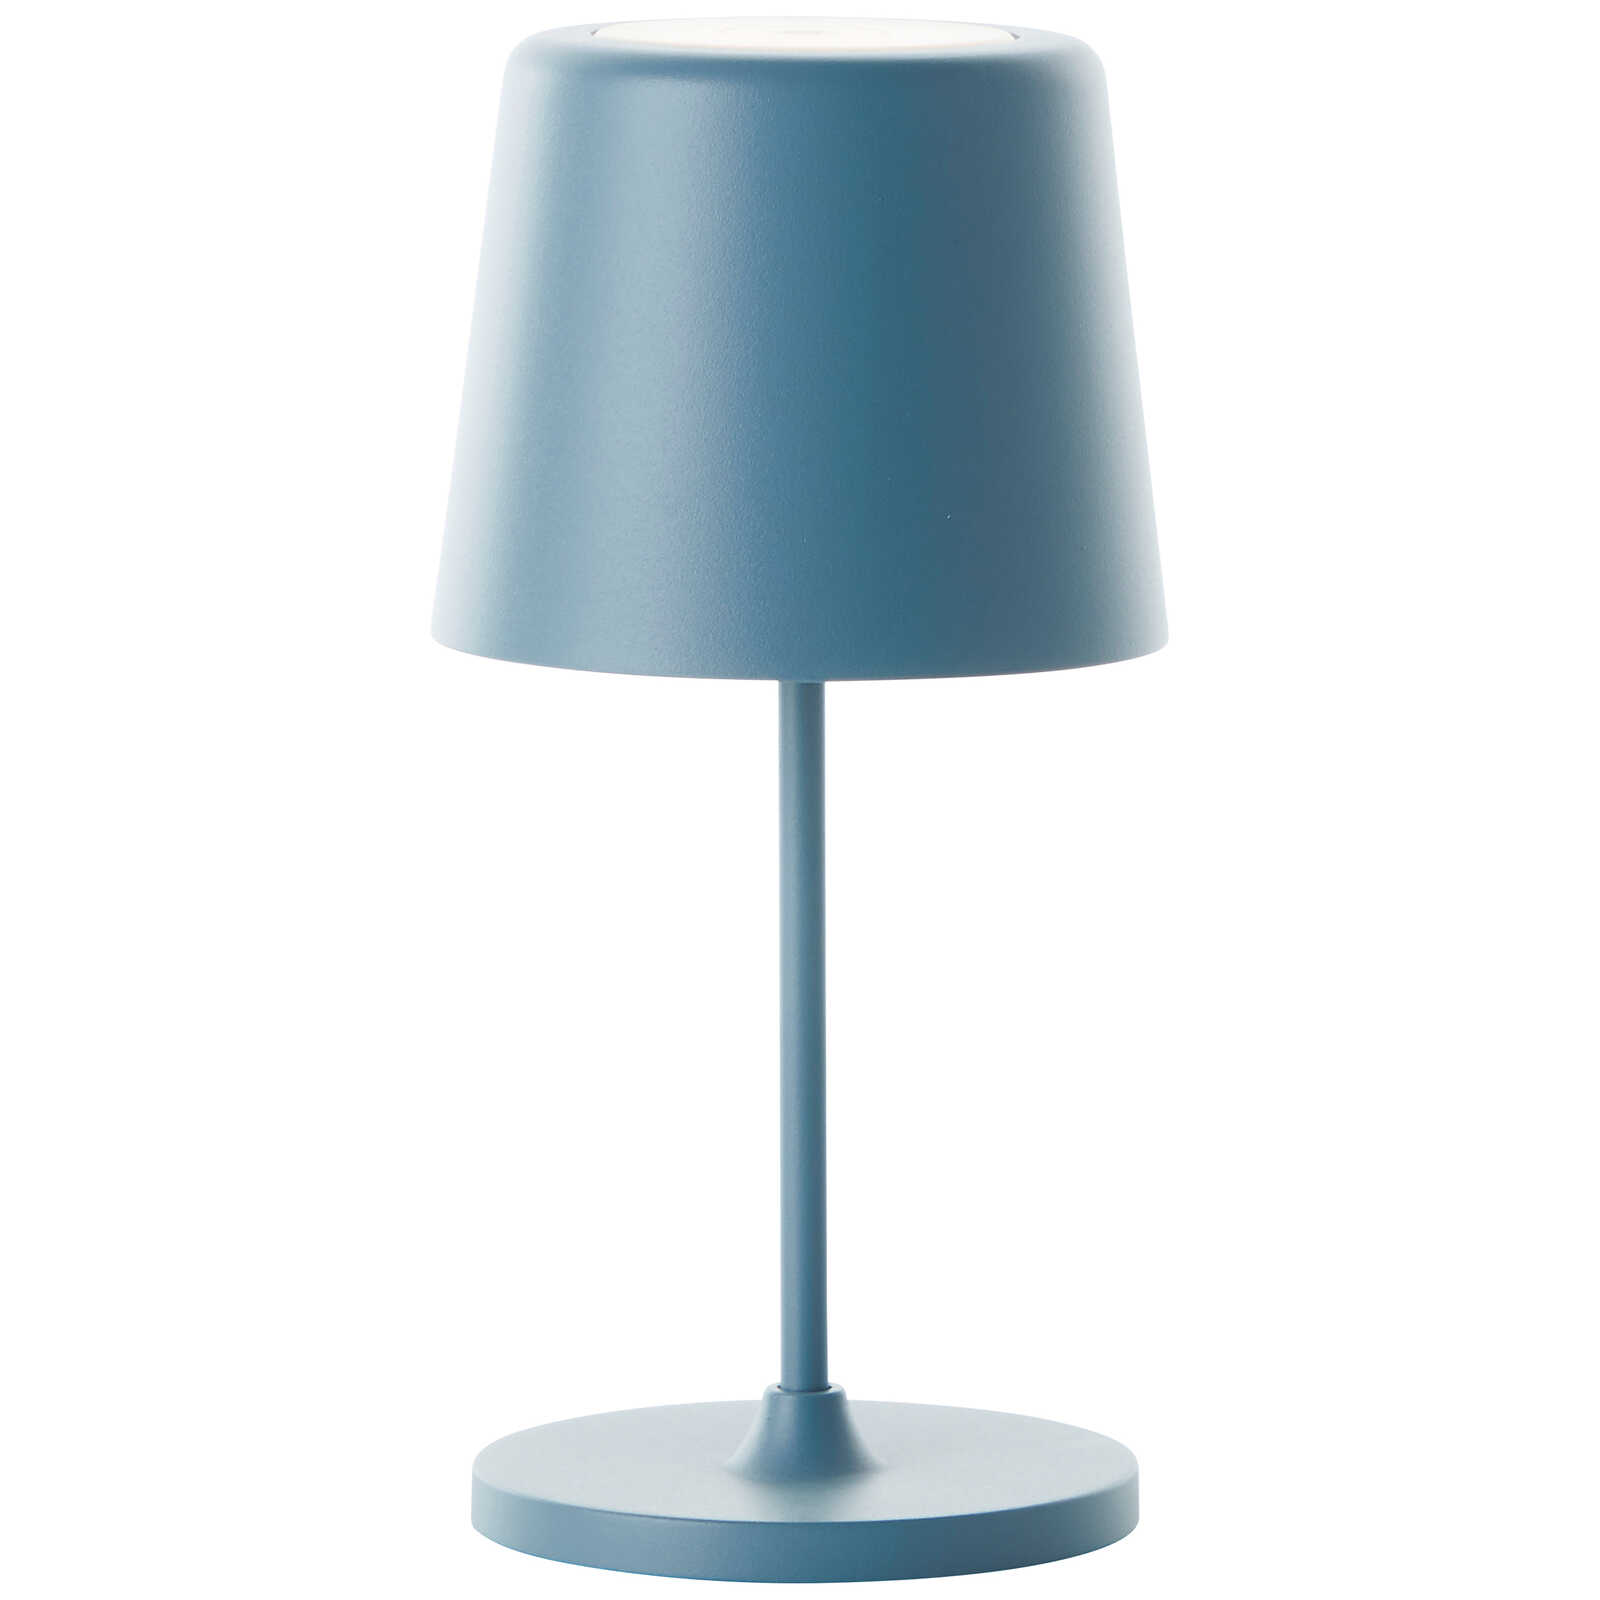             Lampada da tavolo in metallo - Cosy 1 - Blu
        